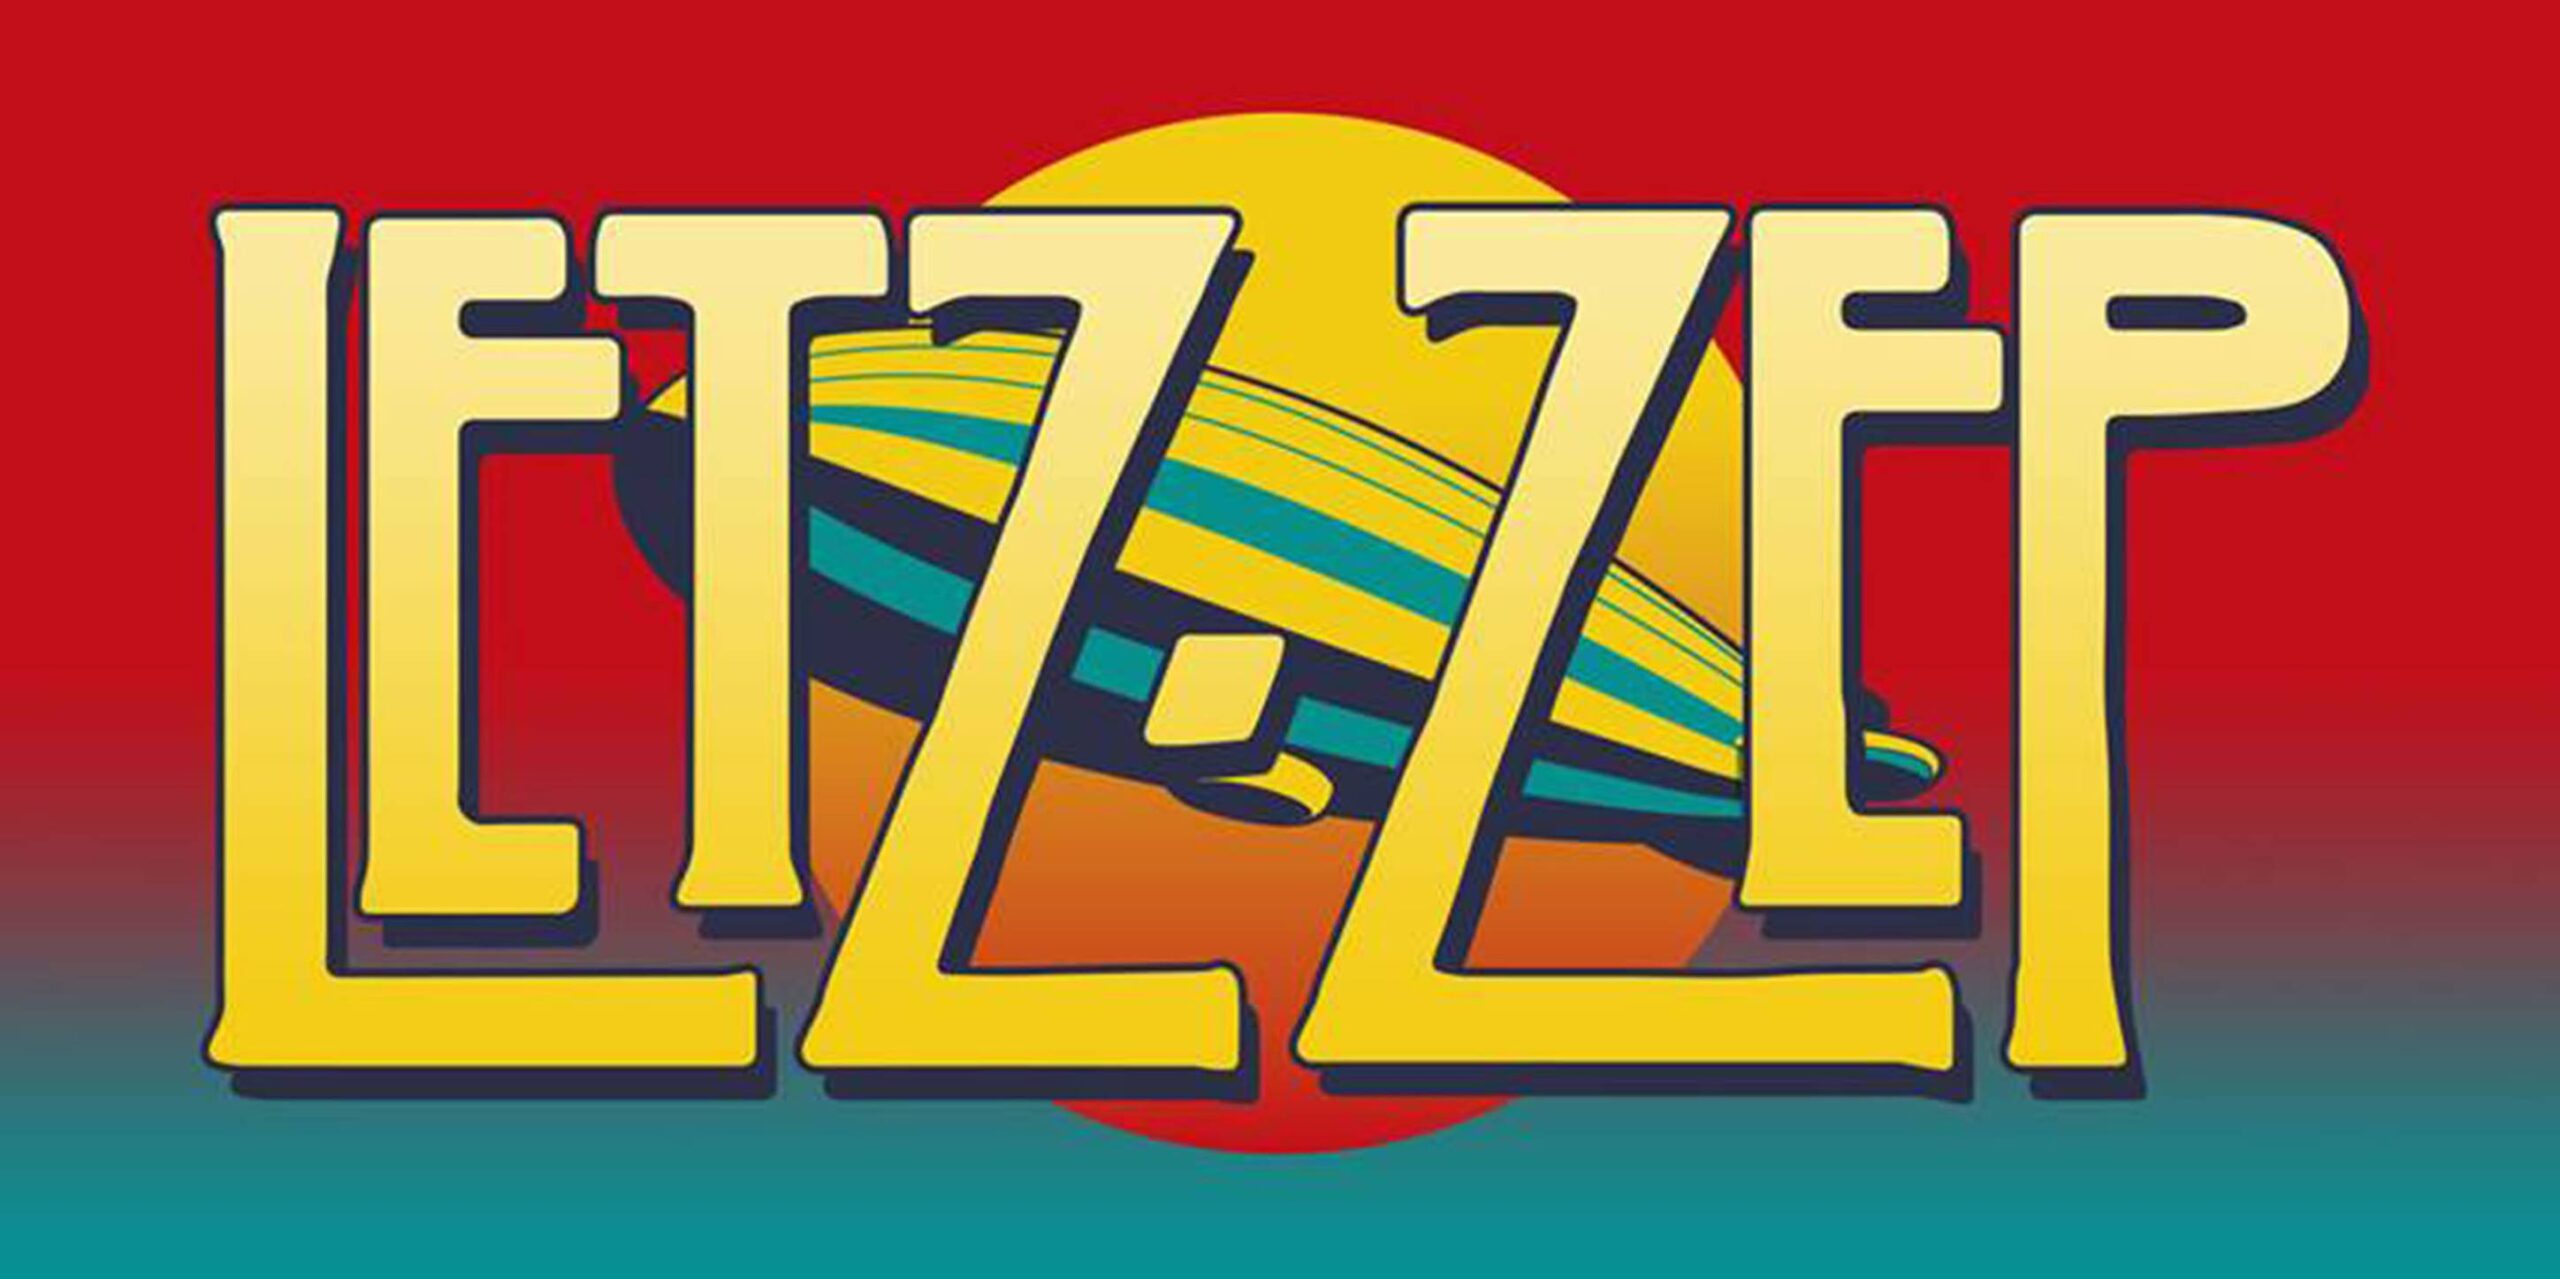 Led Zeppelin performed by Letz Zep